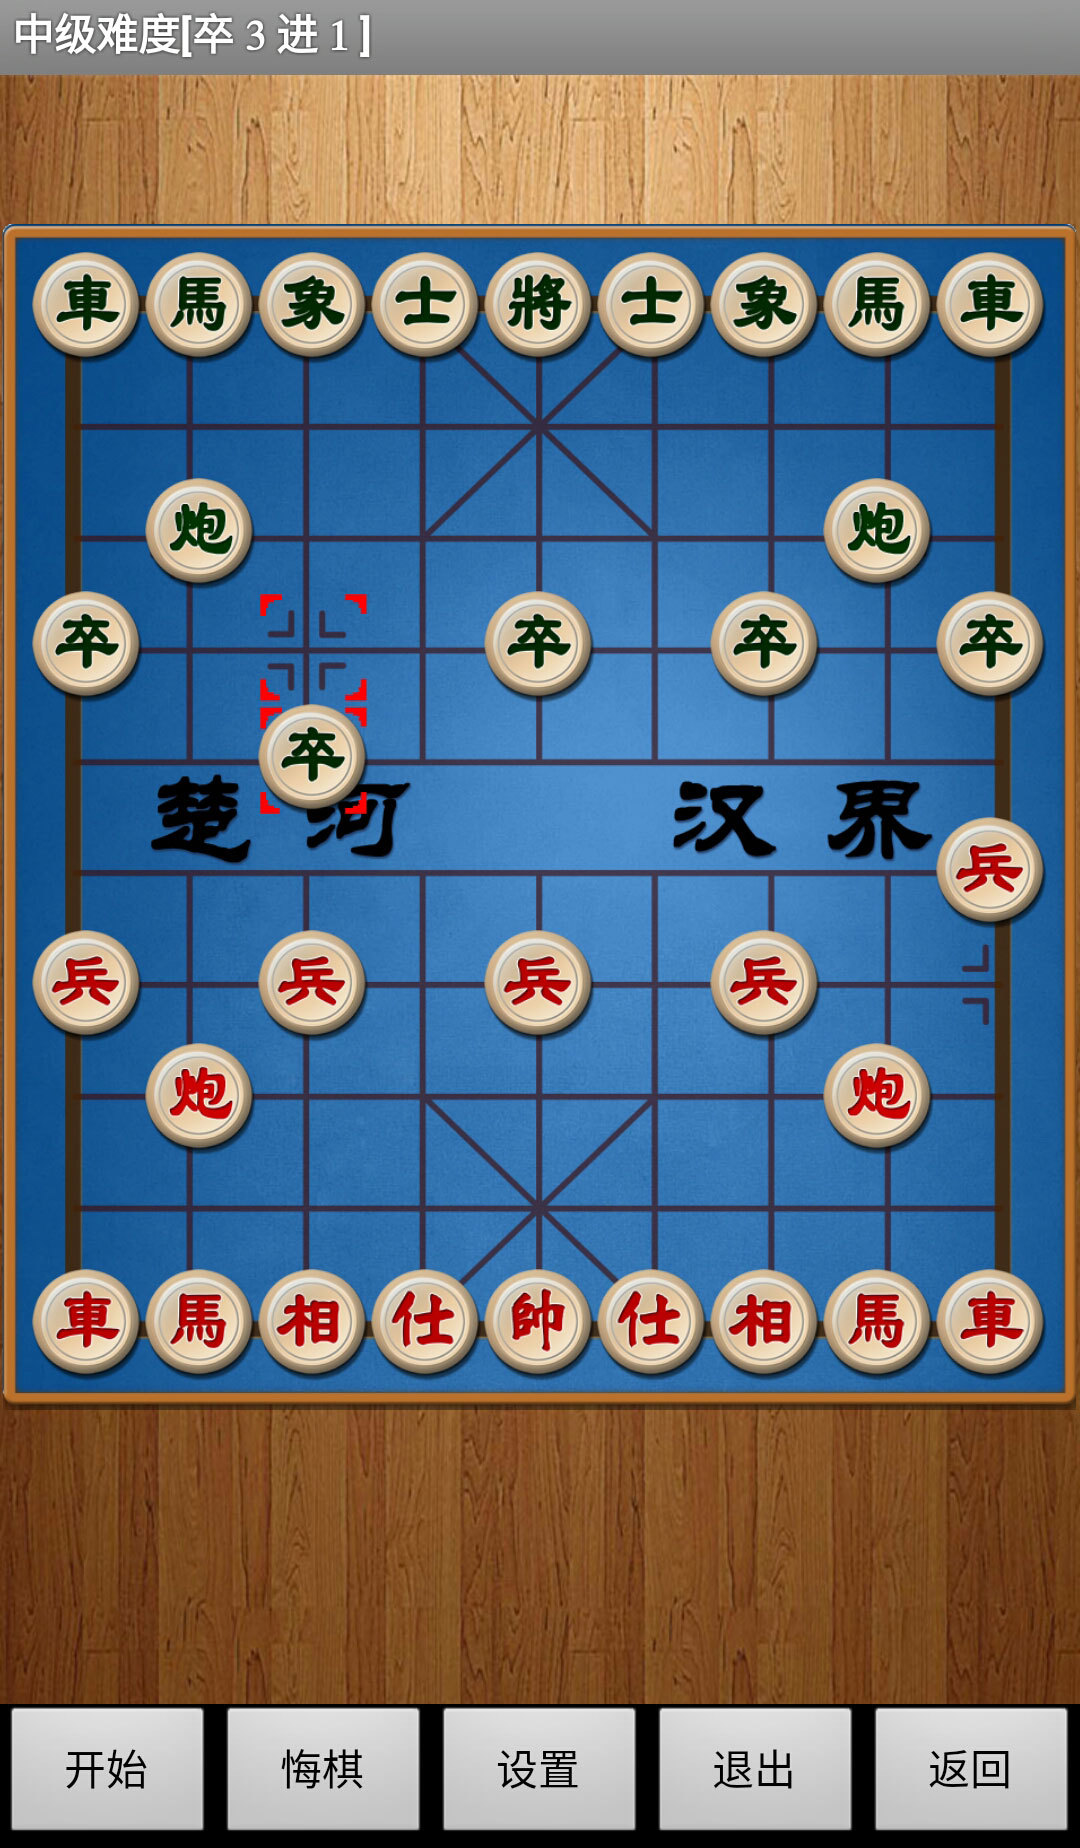 经典中国象棋APP V4.3.5 安卓版截图2